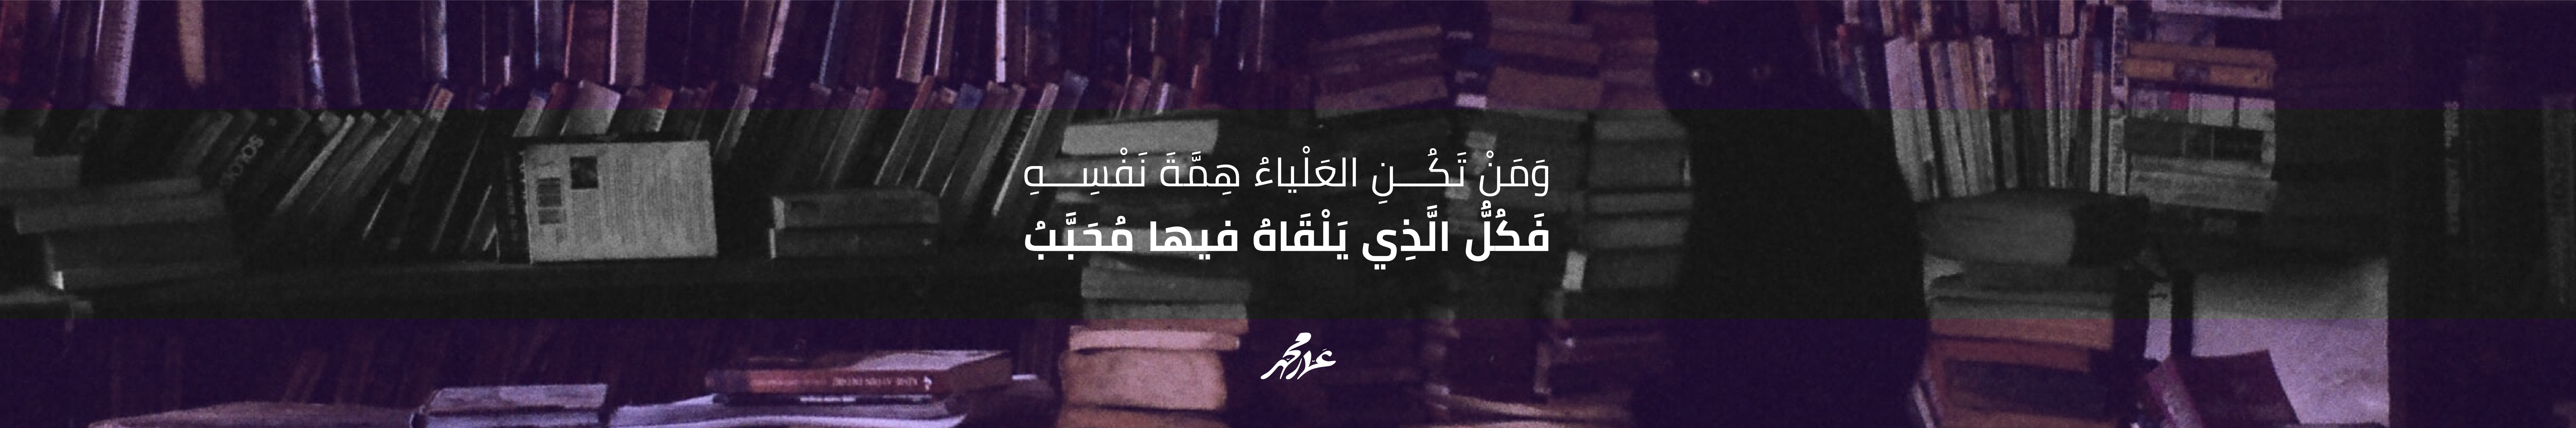 عمّار محمّد الهاشميّ's profile banner